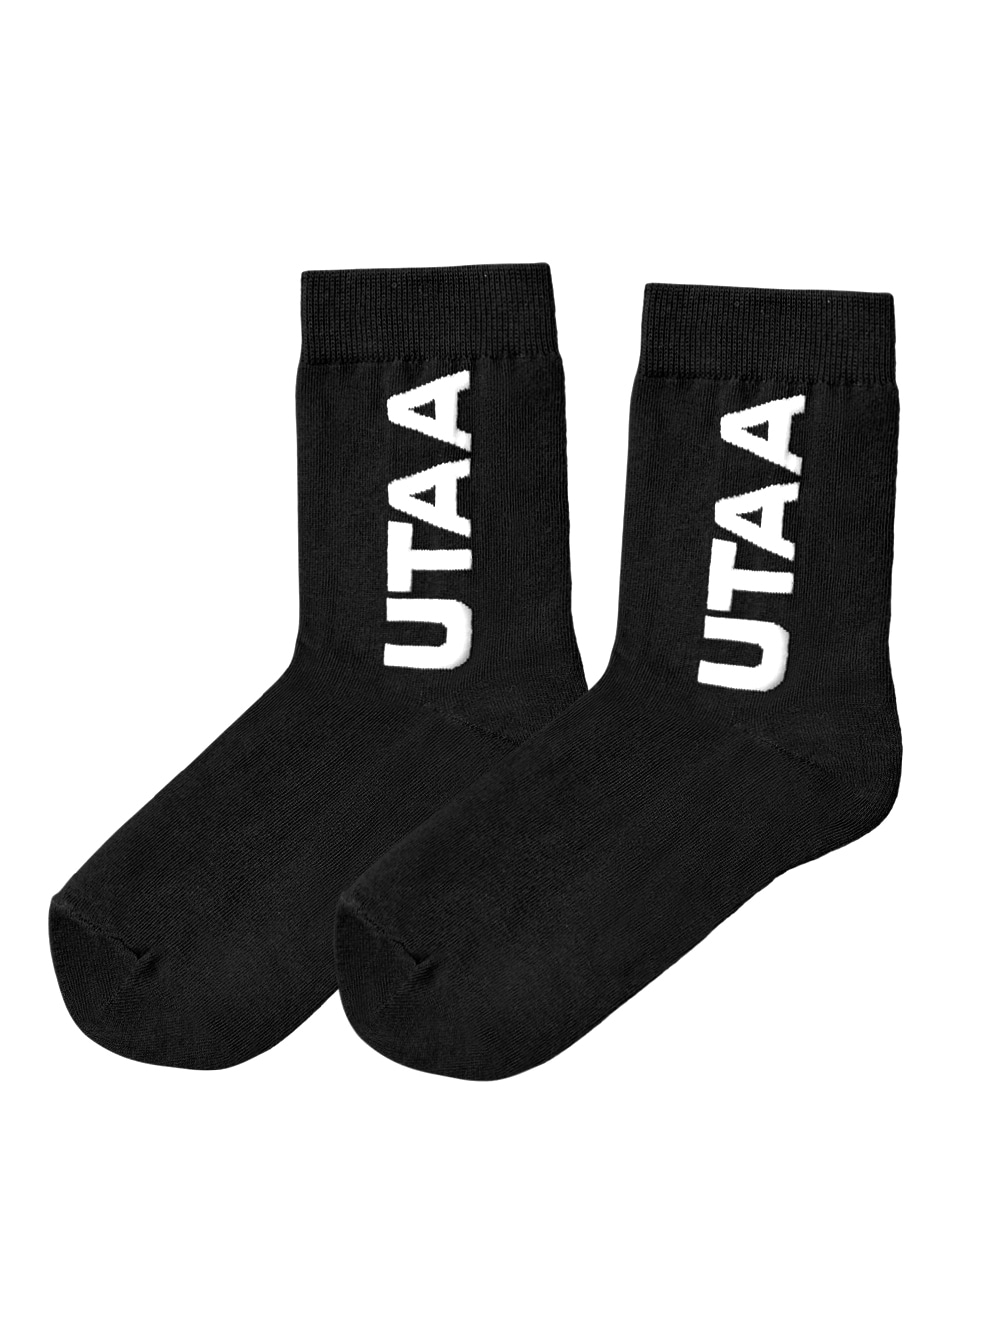 UTAA Logo Socks : Black (UB0GSF152BK)